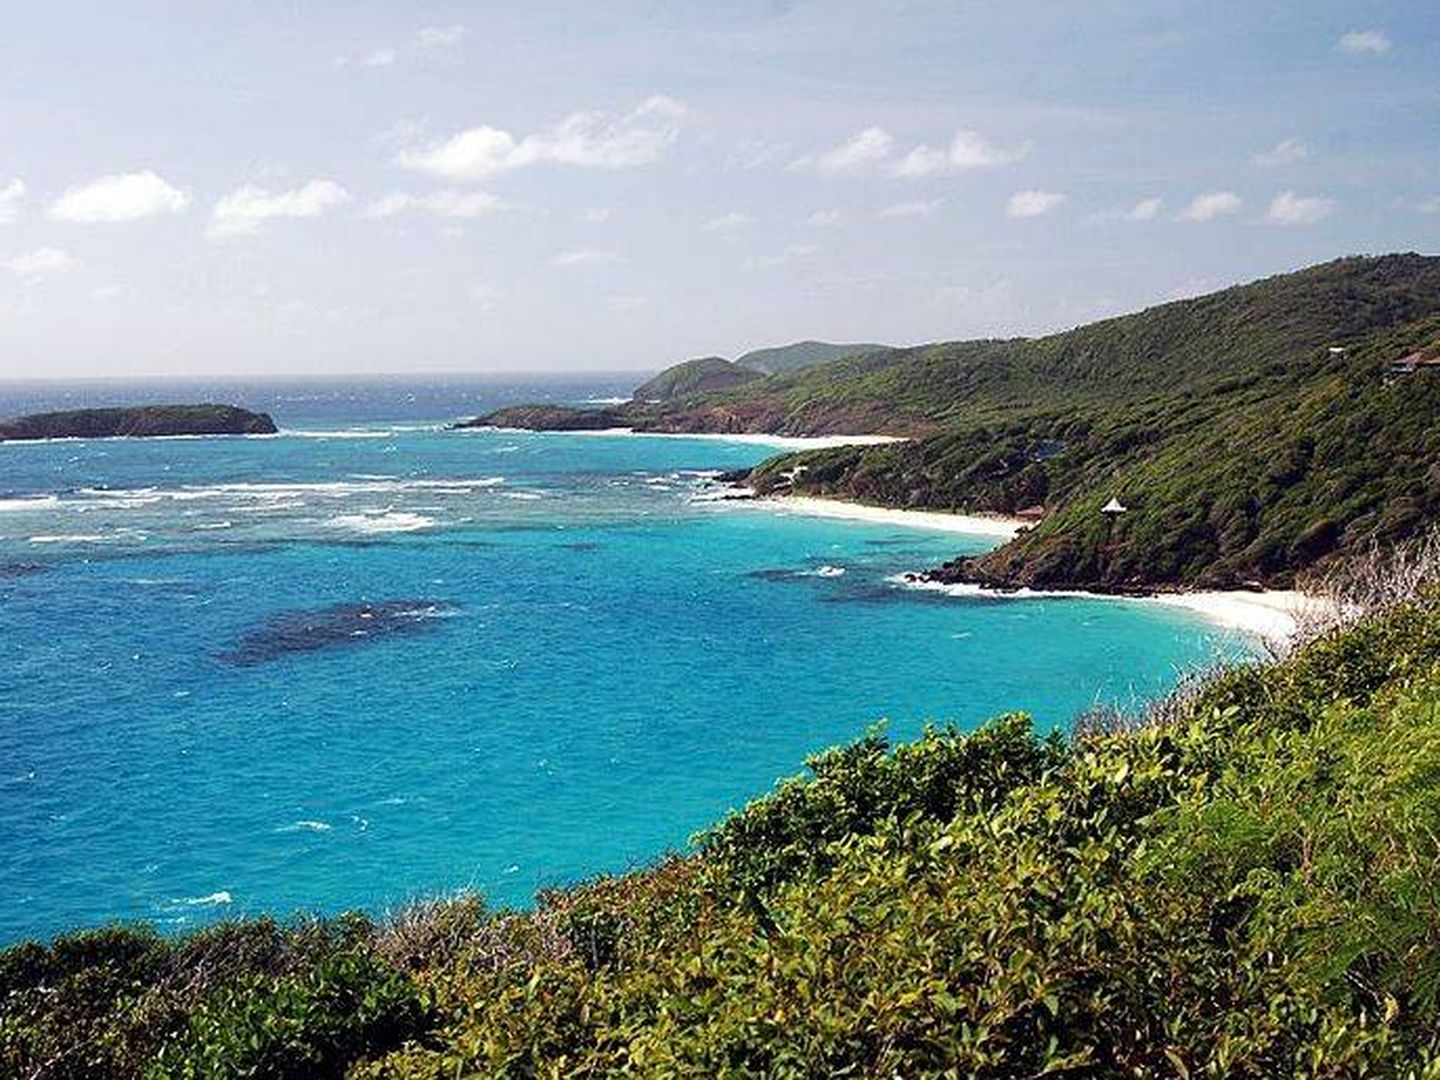 Playas de la isla Mustique, una de Las Granadinas. (Wikimedia Commons)